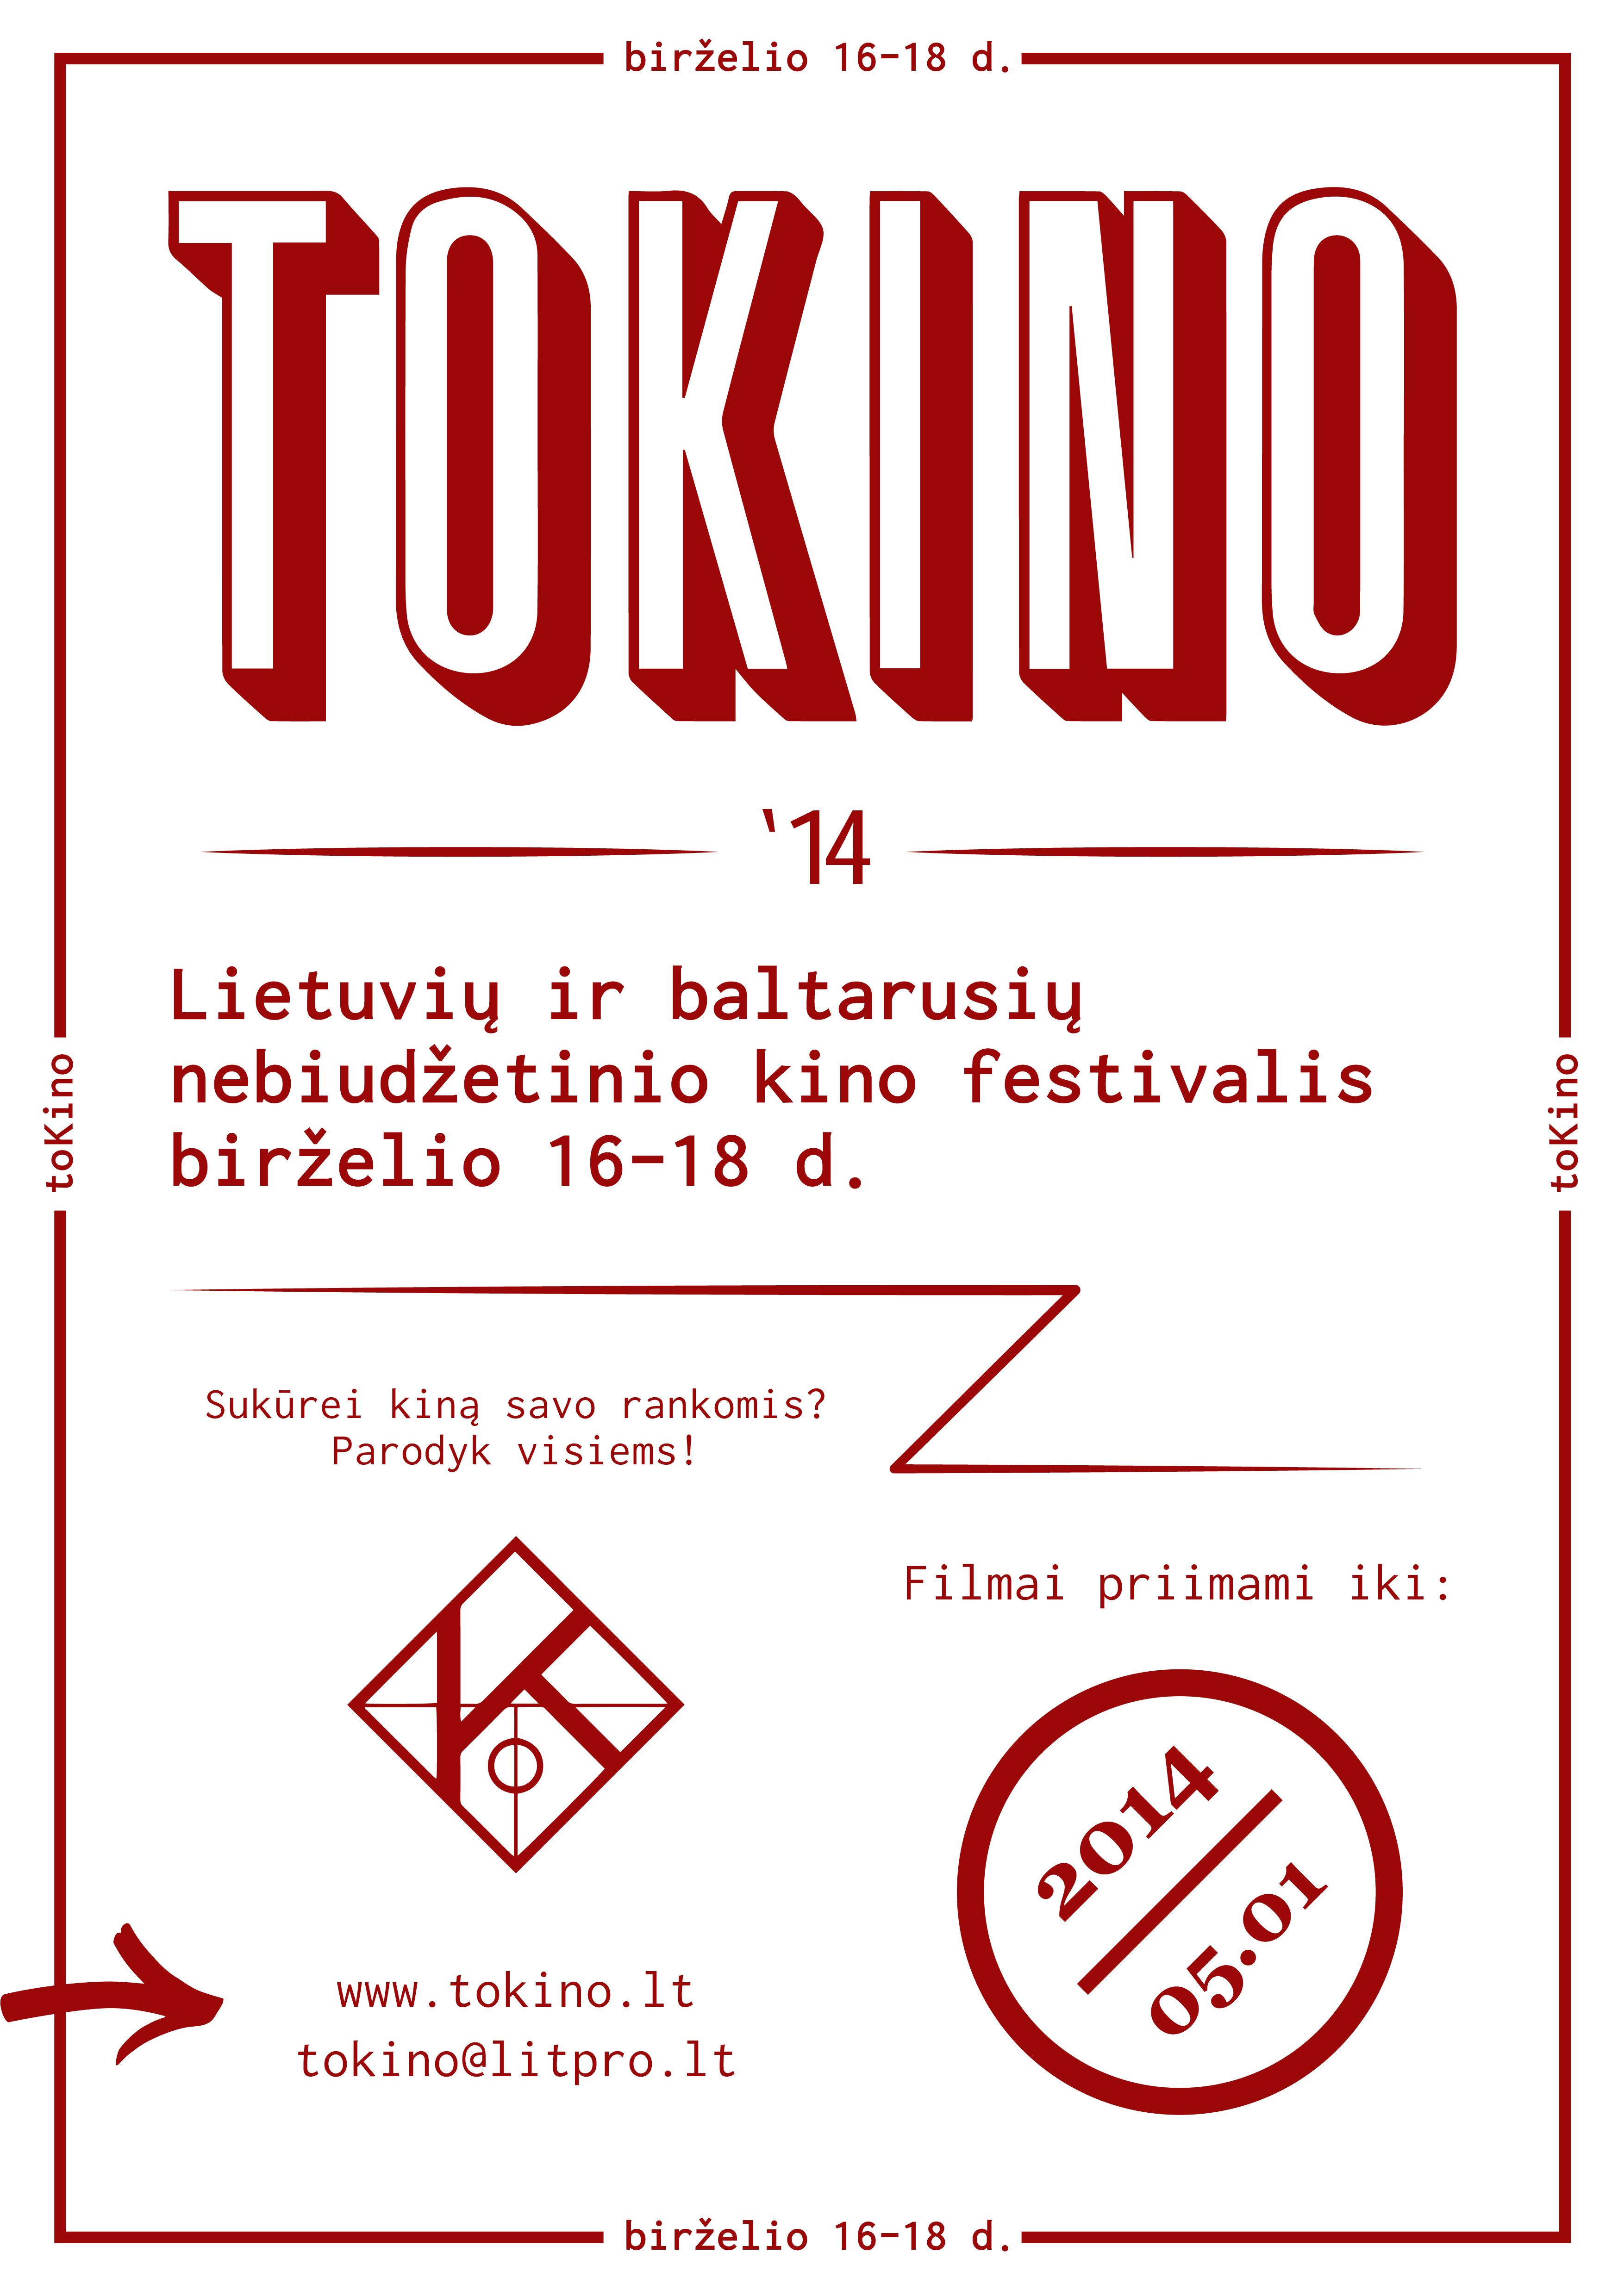 toKino - lietuvių ir baltarusių nebiudžetinio kino festivalis